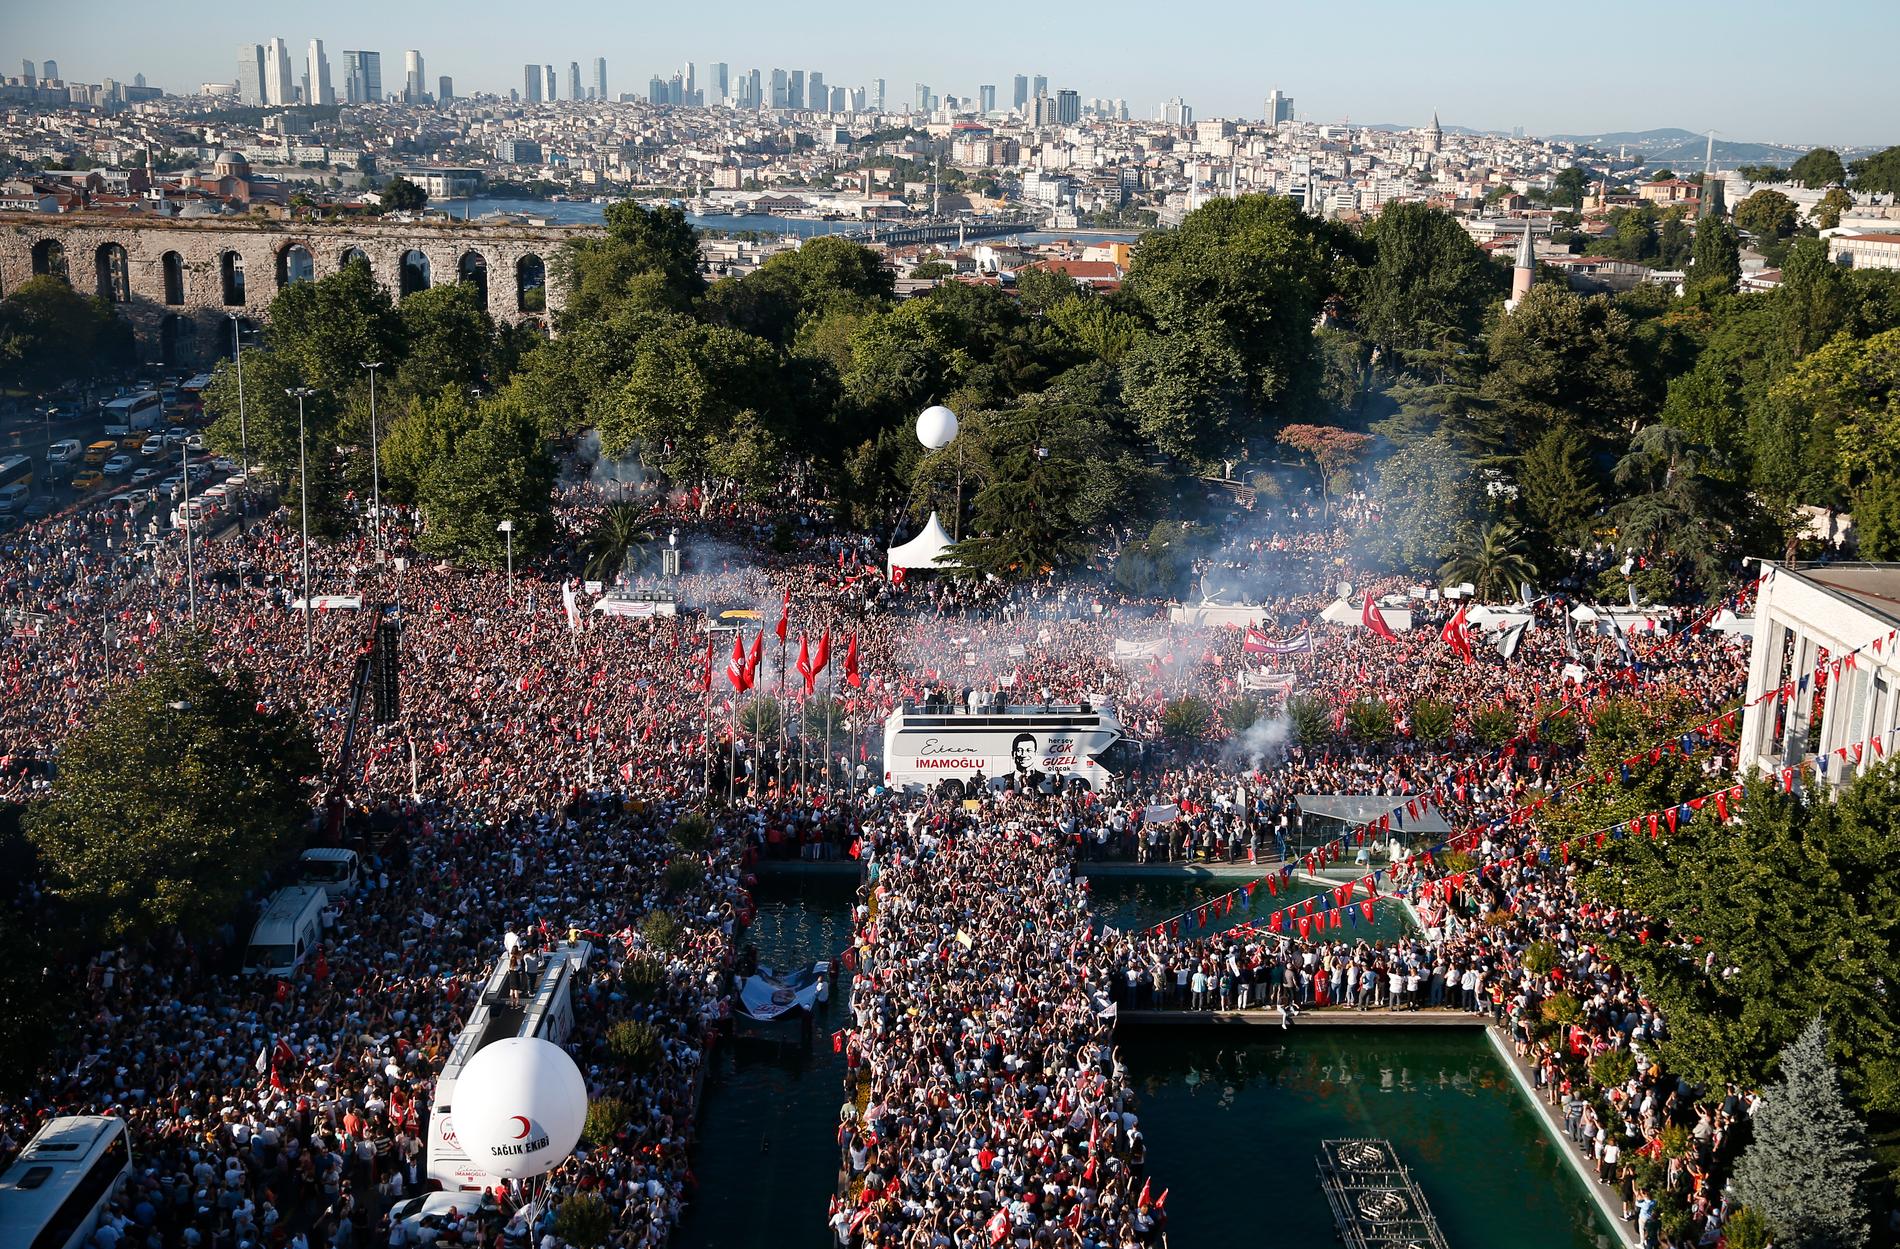 Tusentals anhängare hyllar Ekrem mamoğlu efter att han svurits in som Istanbuls borgmästare.